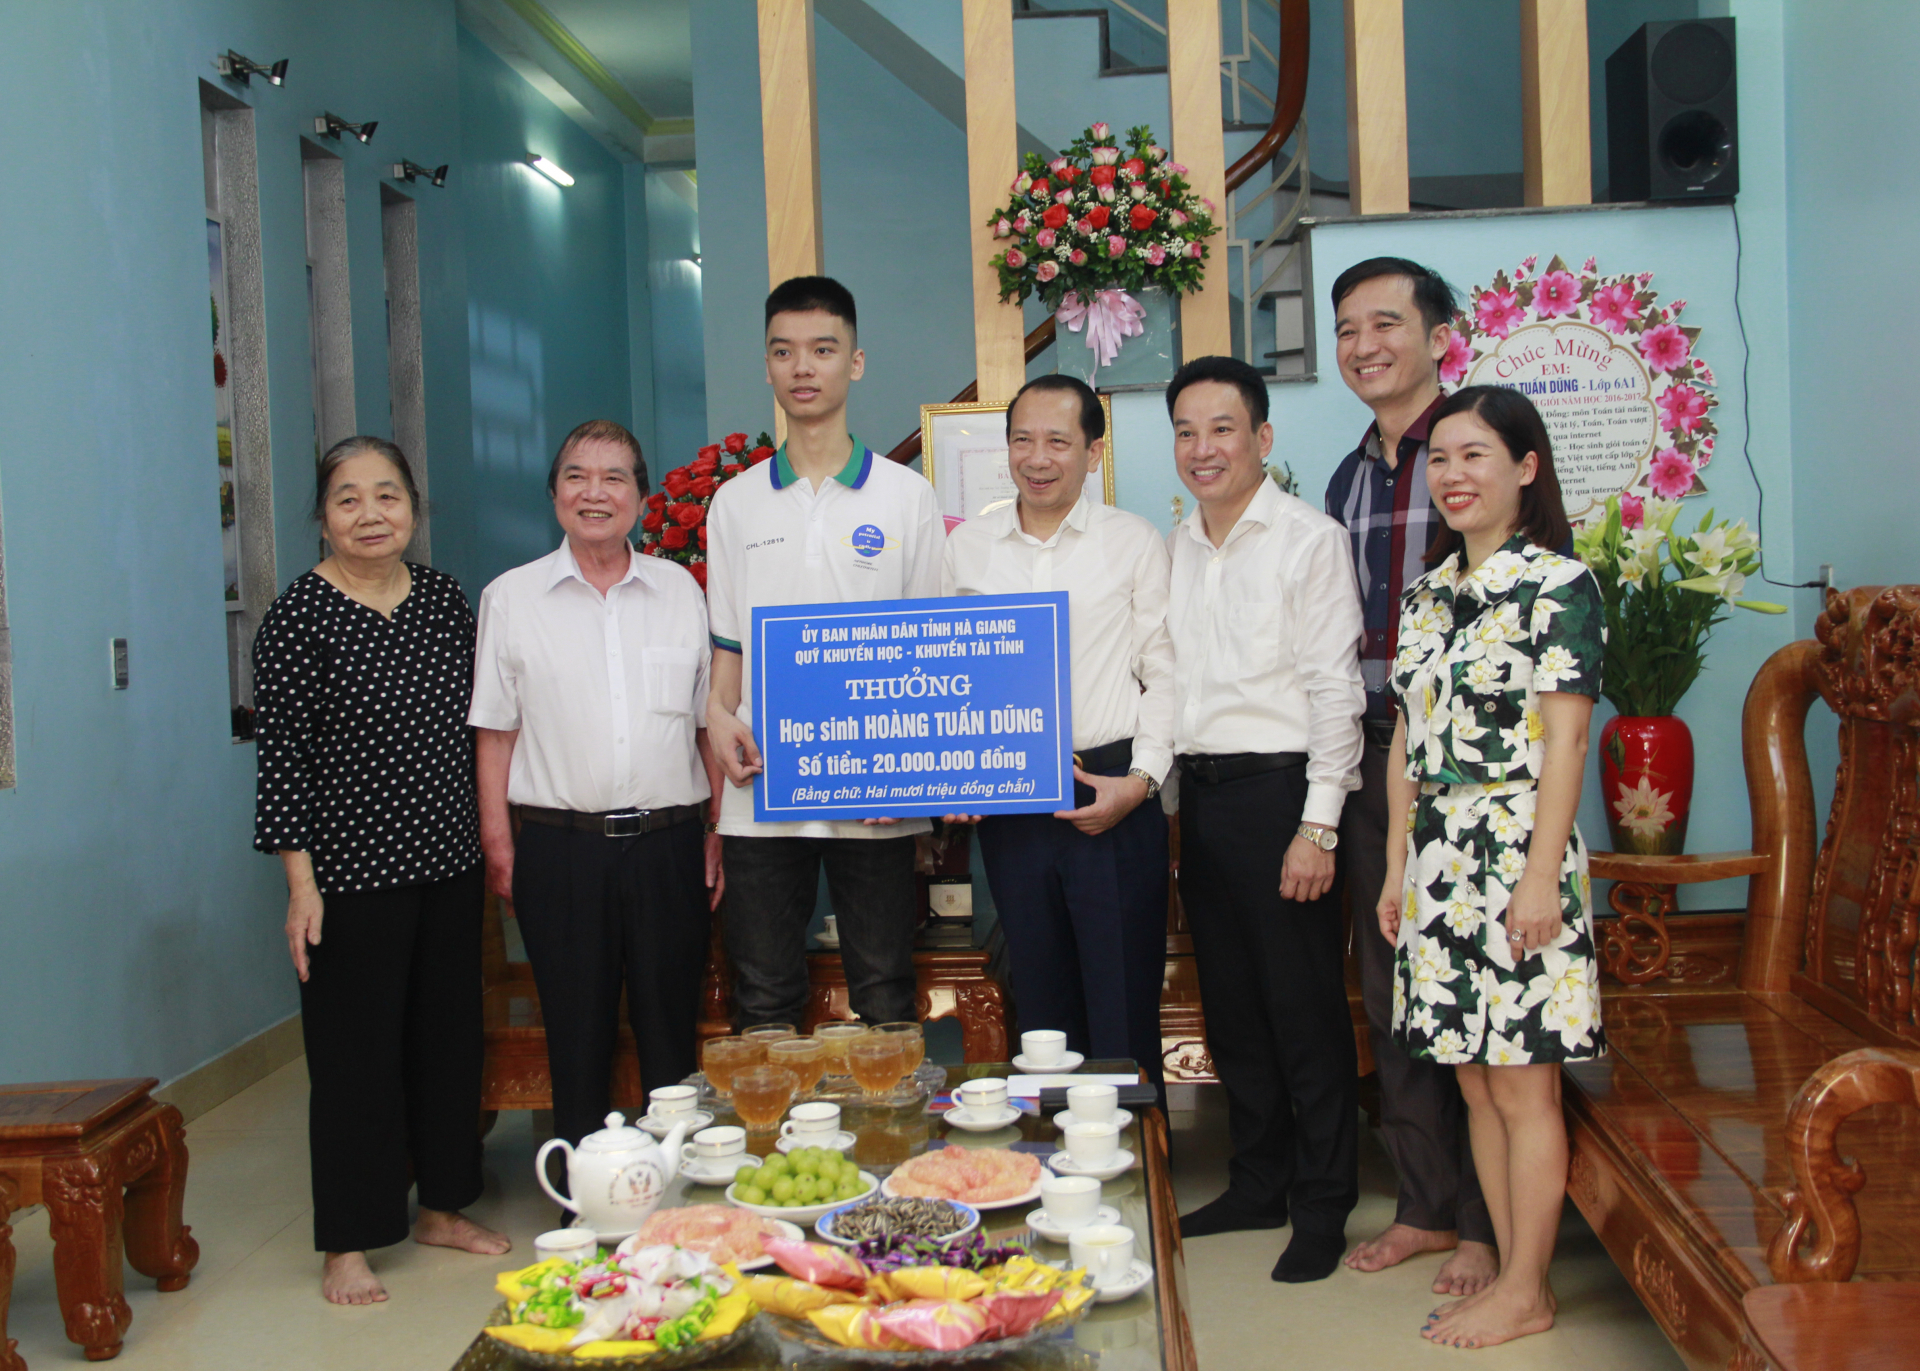 Phó Chủ tịch UBND tỉnh Trần Đức Quý trao thưởng cho học sinh Hoàng Tuấn Dũng.
